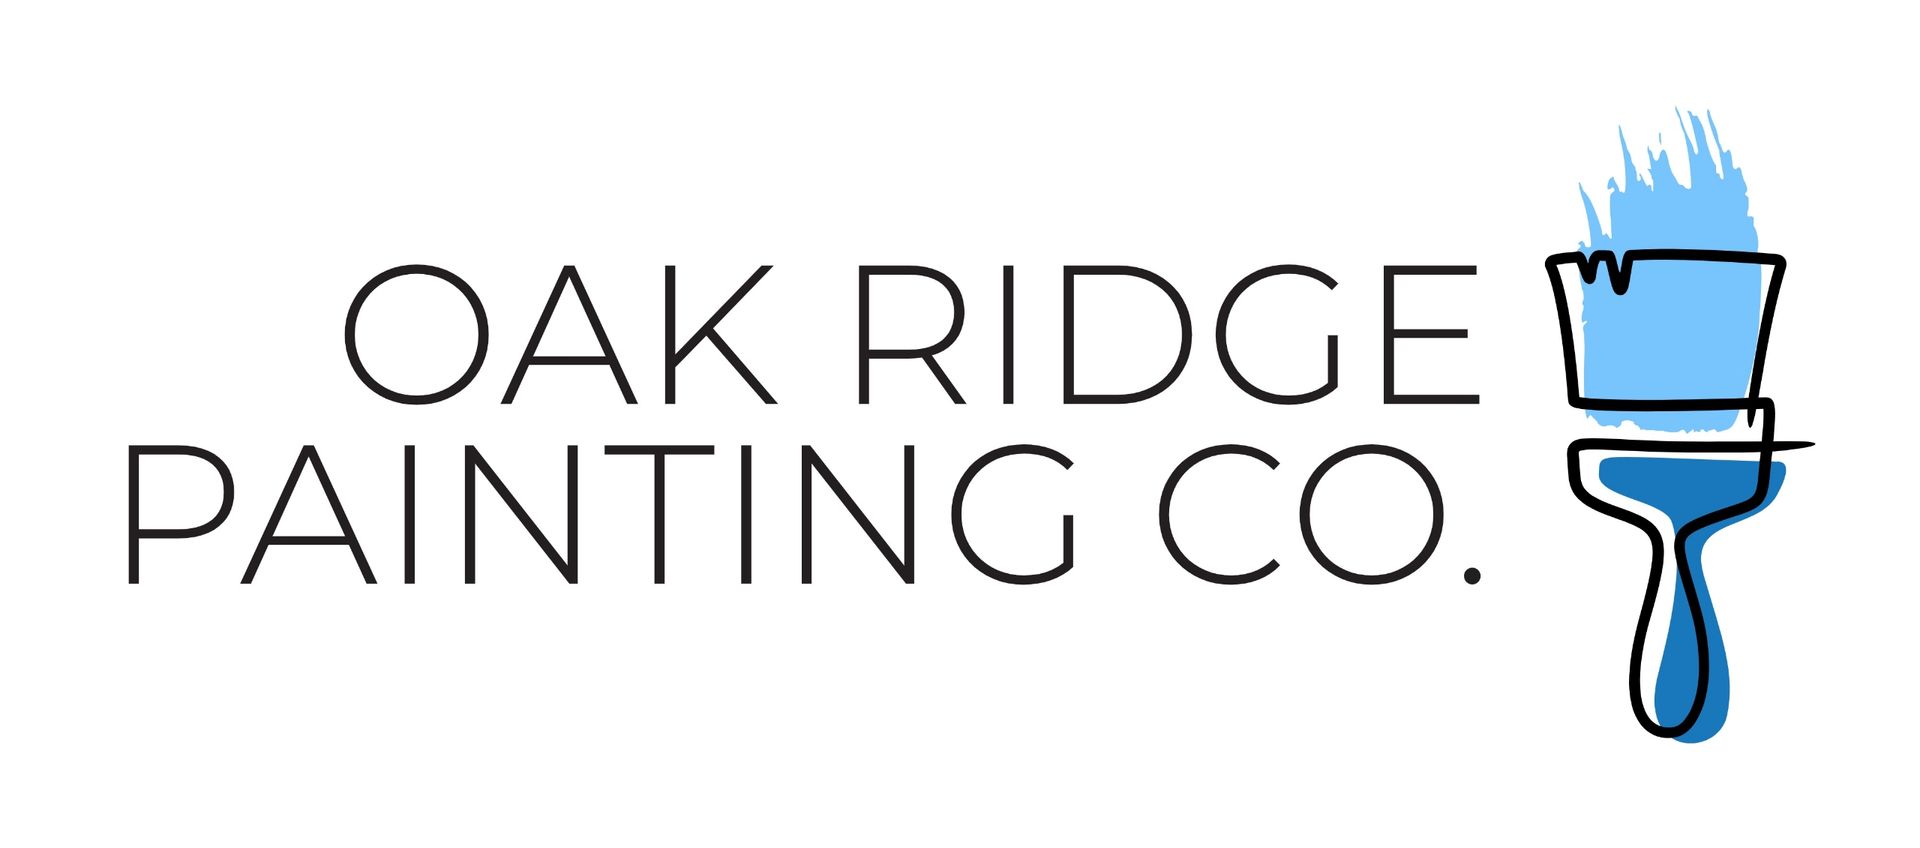 Oak Ridge Painting